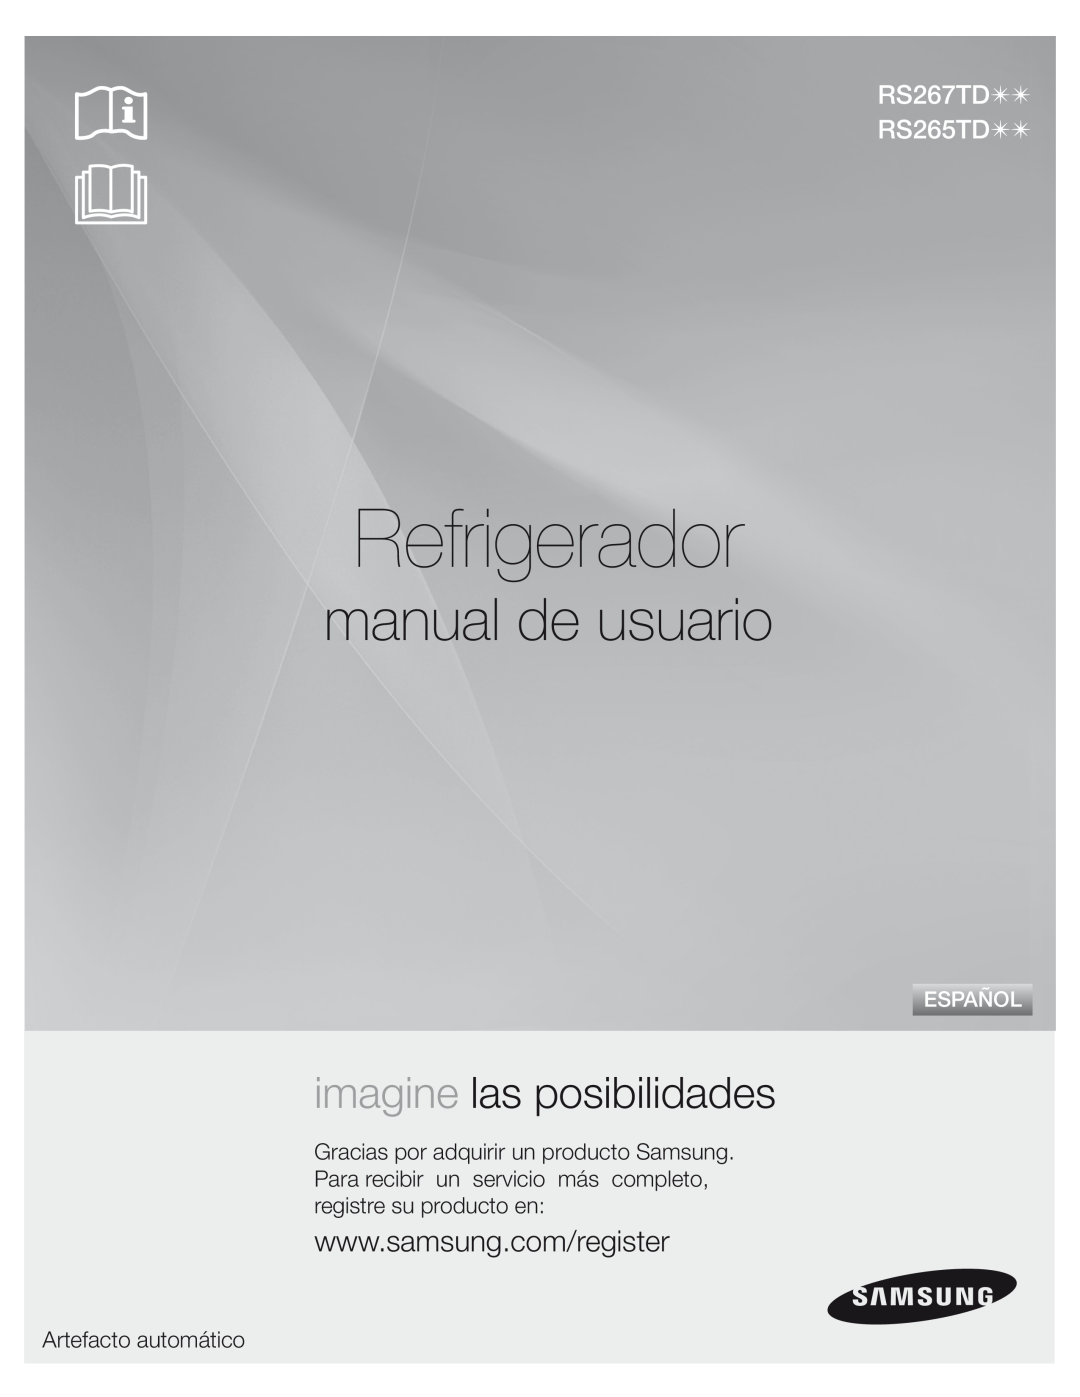 Samsung DA68-01890M user manual Refrigerador, manual de usuario, imagine las posibilidades, Artefacto automático, Español 